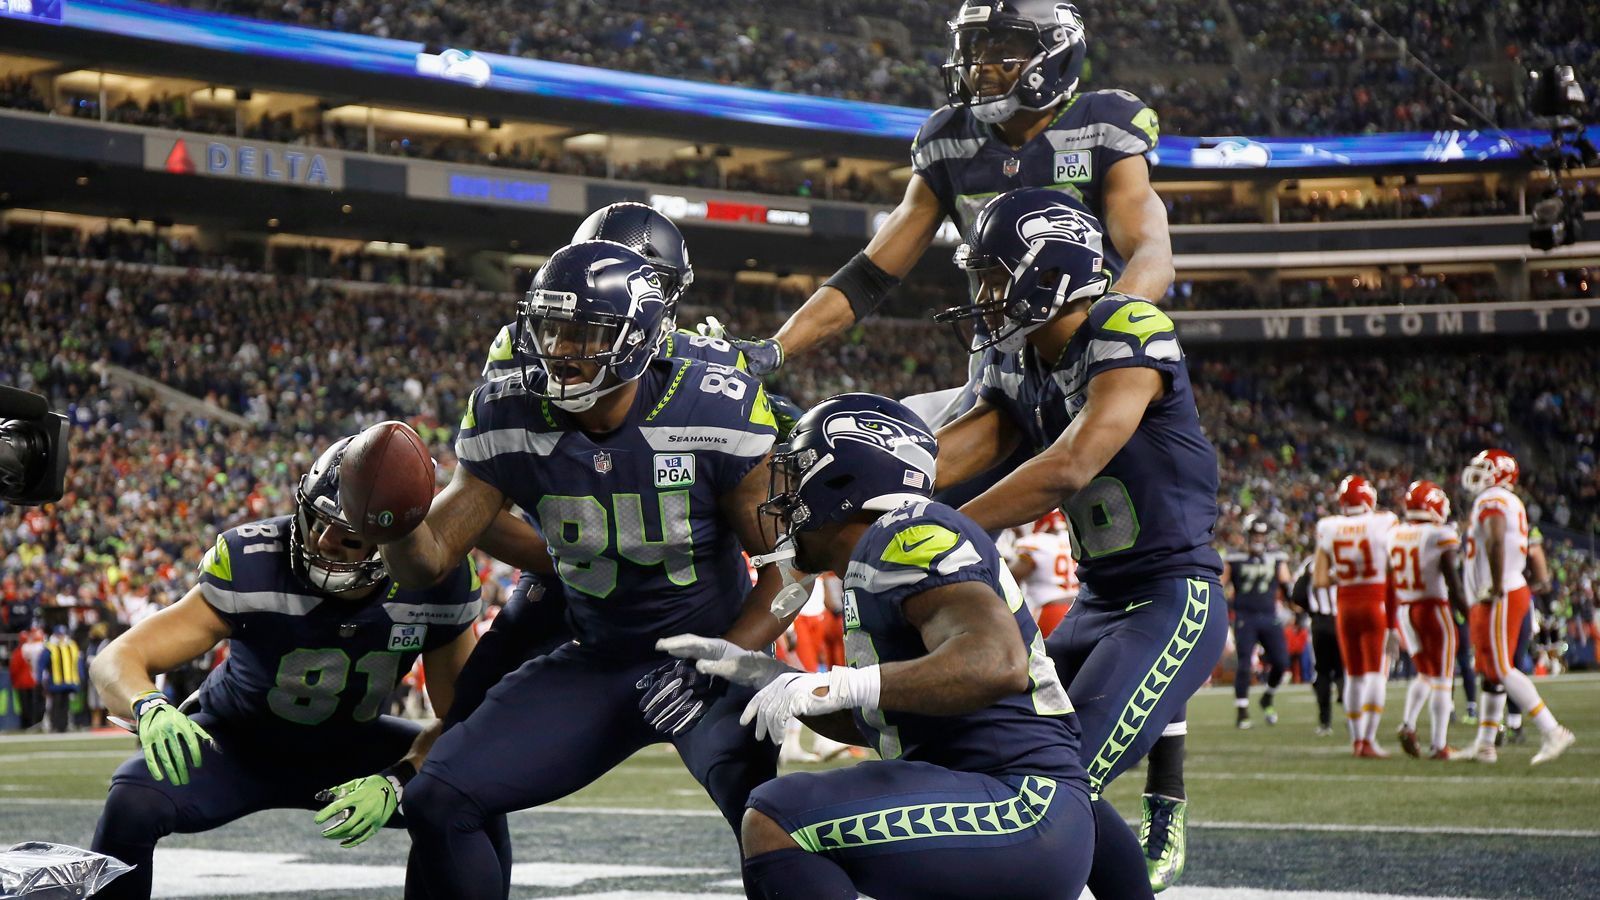 
                <strong>Celebration of the Year: Seattle Seahawks</strong><br>
                Die Choreographie der Seahawks beim Touchdown-Jubel bringt den Sieg in der Kategorie.
              